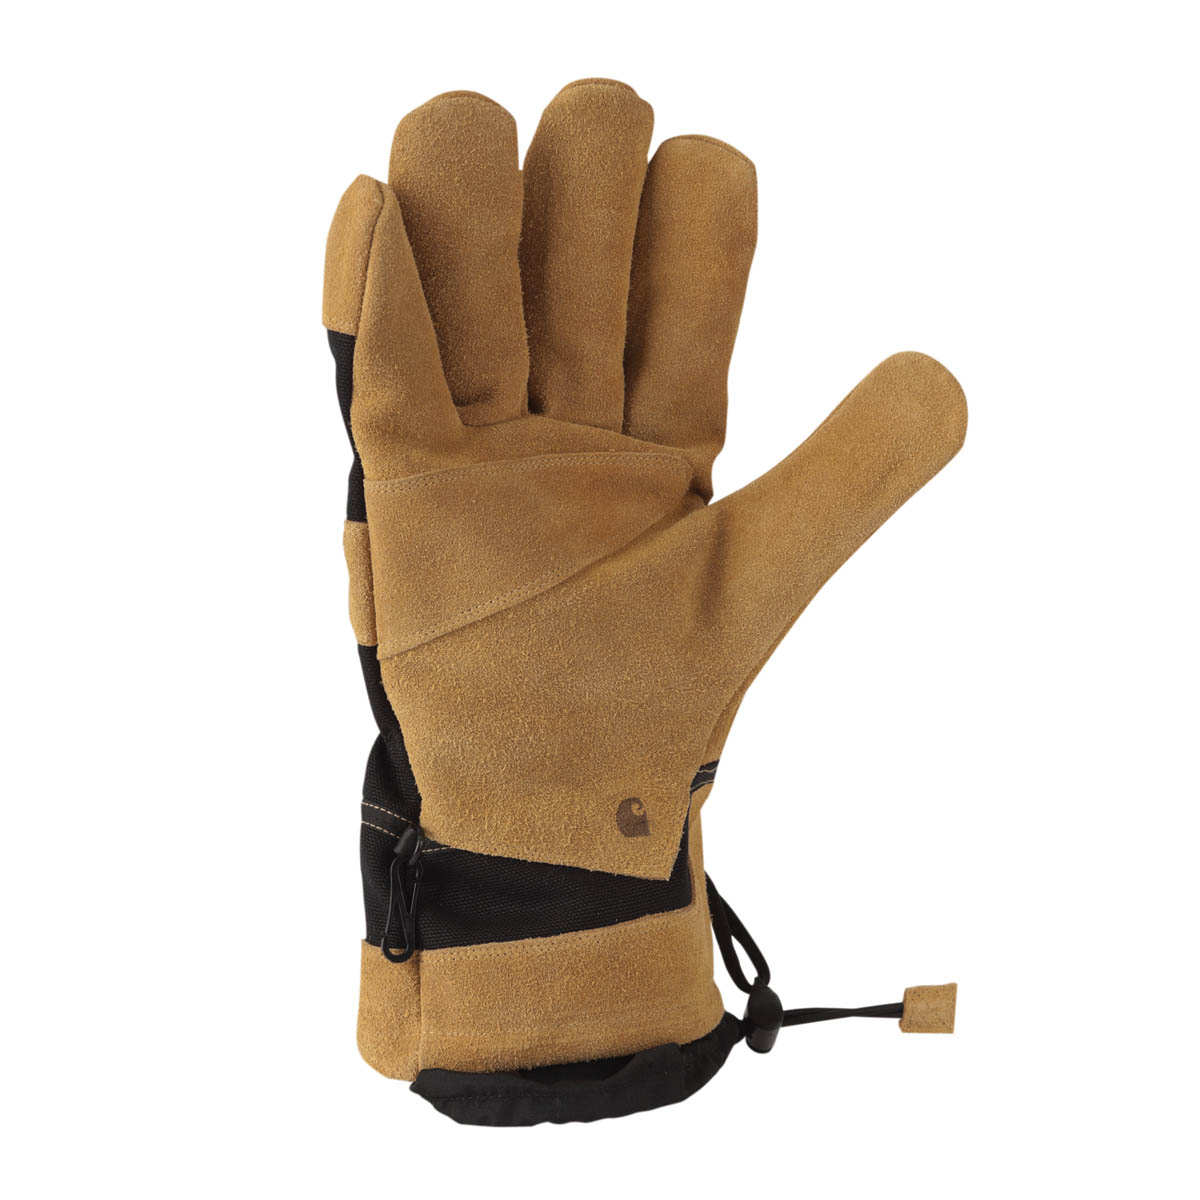 Carhartt Mens Dozer Glove Safety Cuff Gauntlet